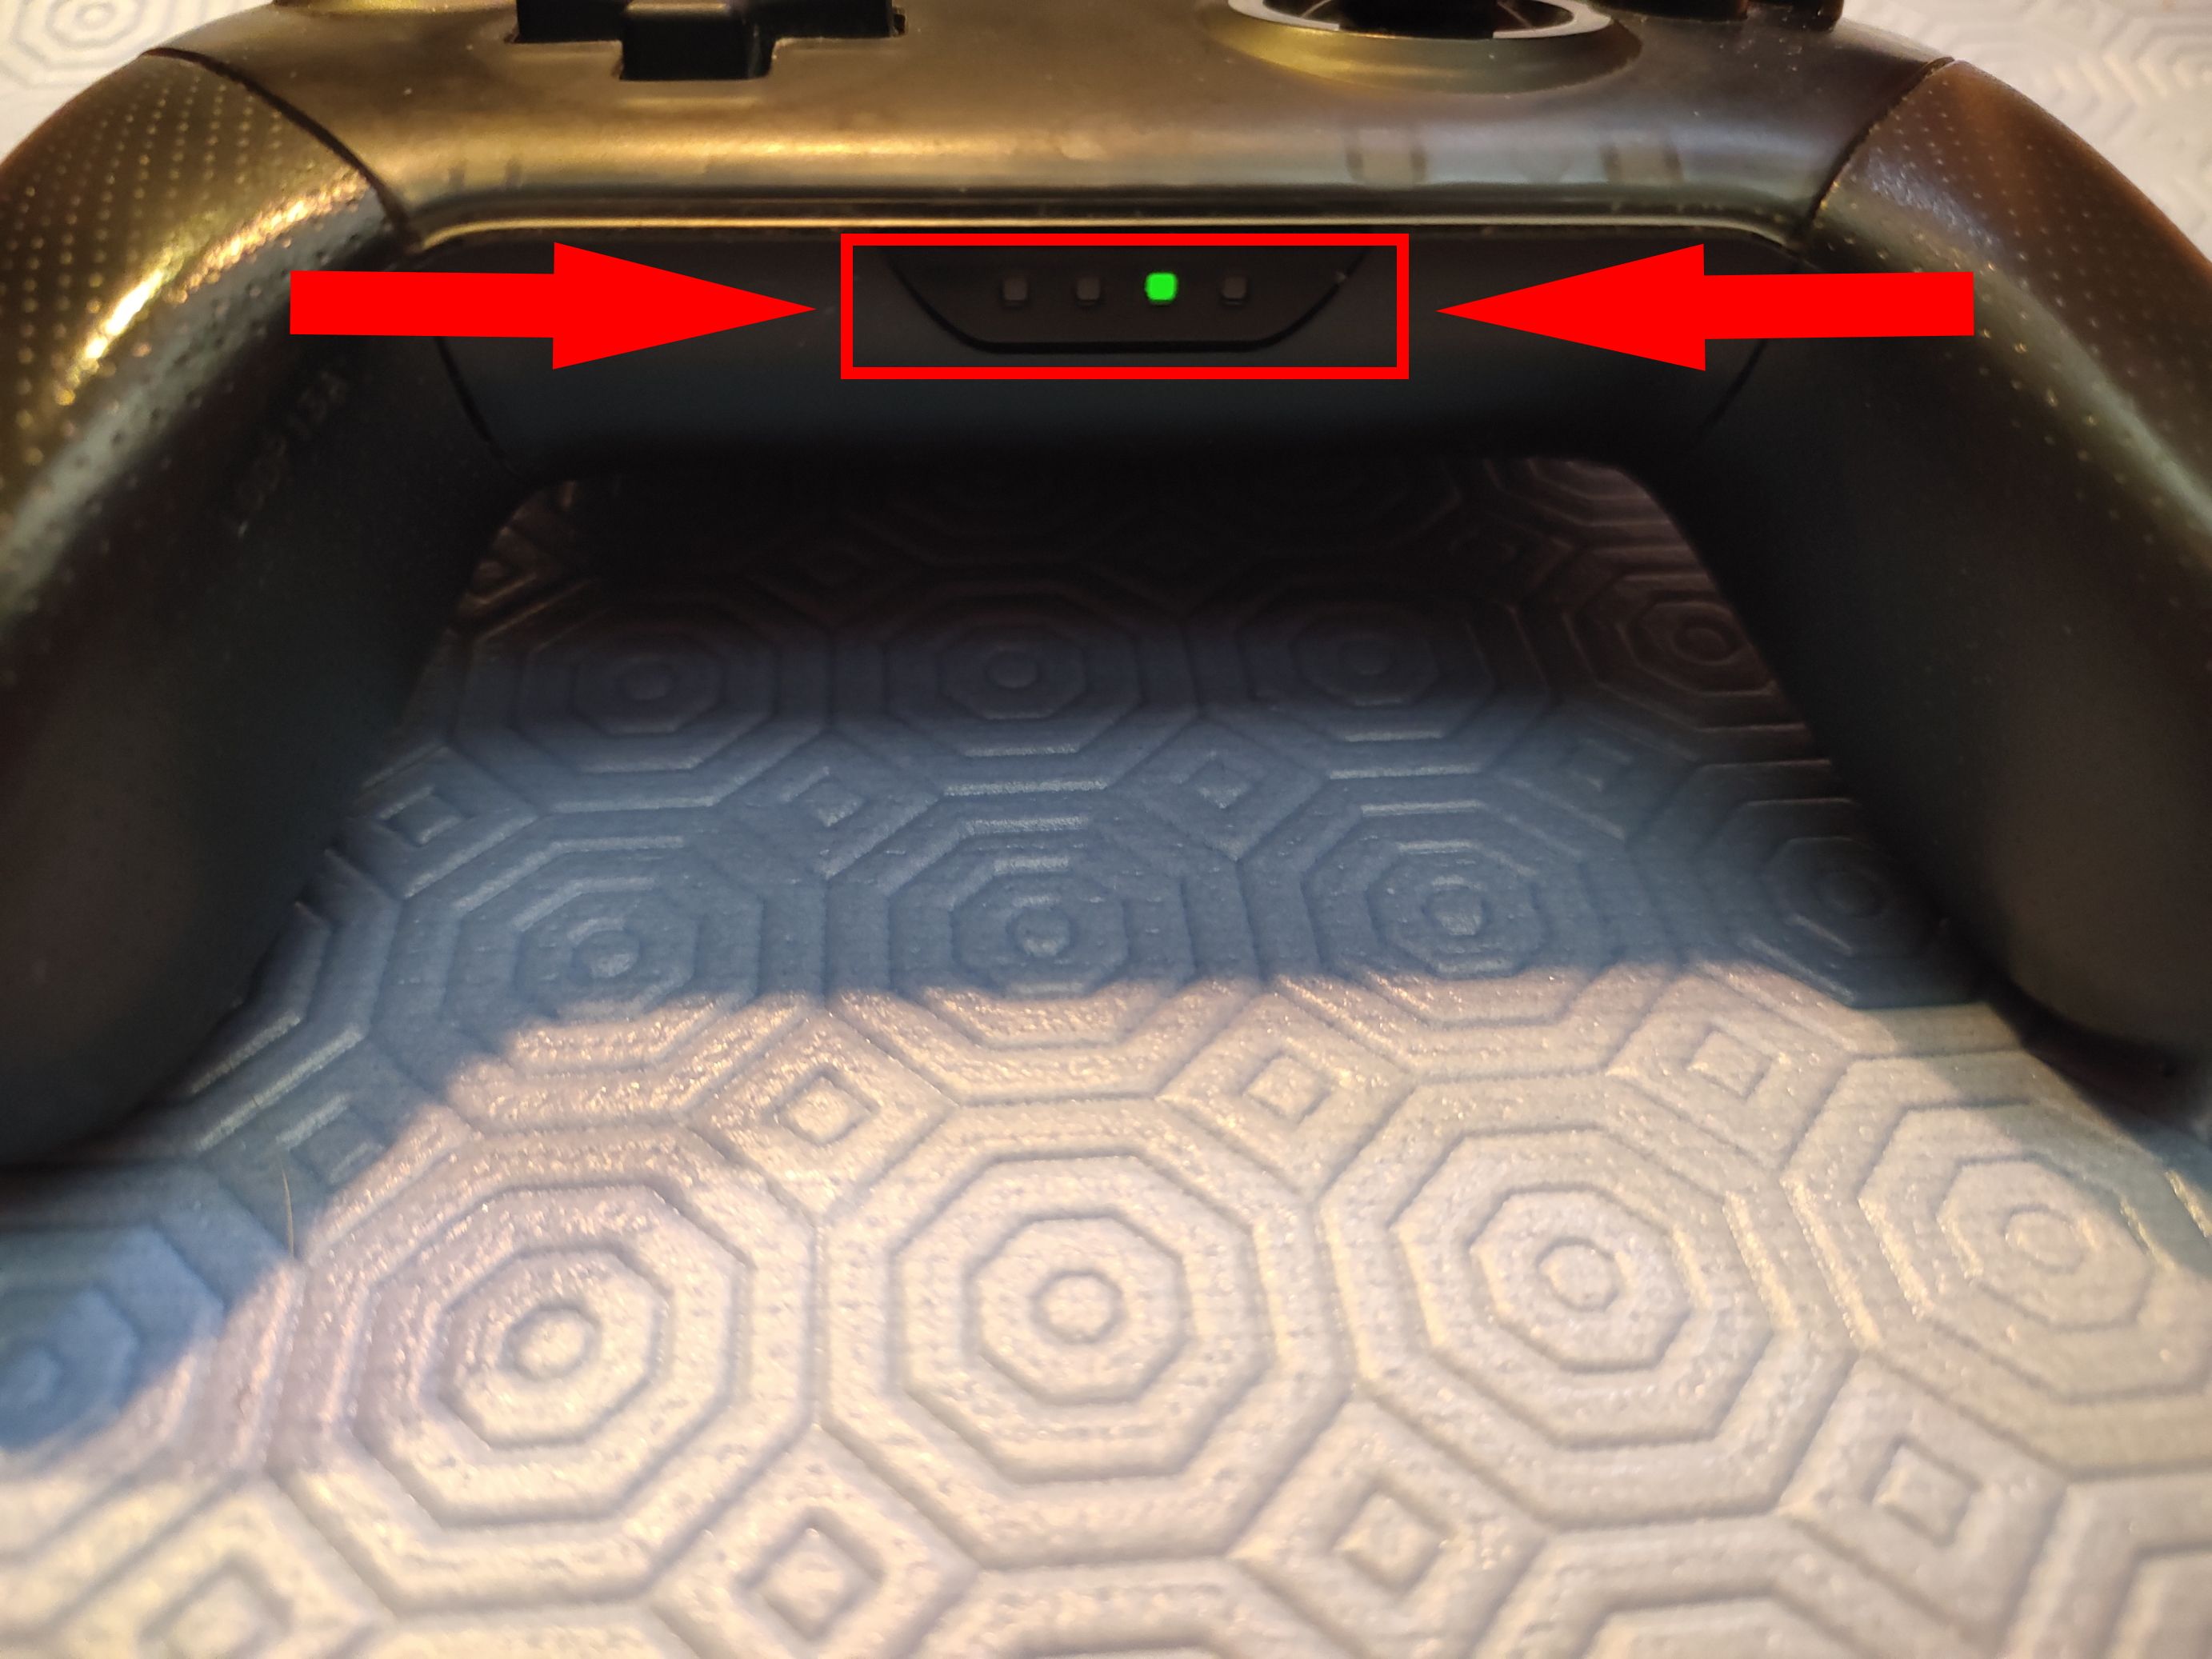 Fotografia das luzes piscando (durante o emparelhamento) para um controlador Nintendo Switch Pro